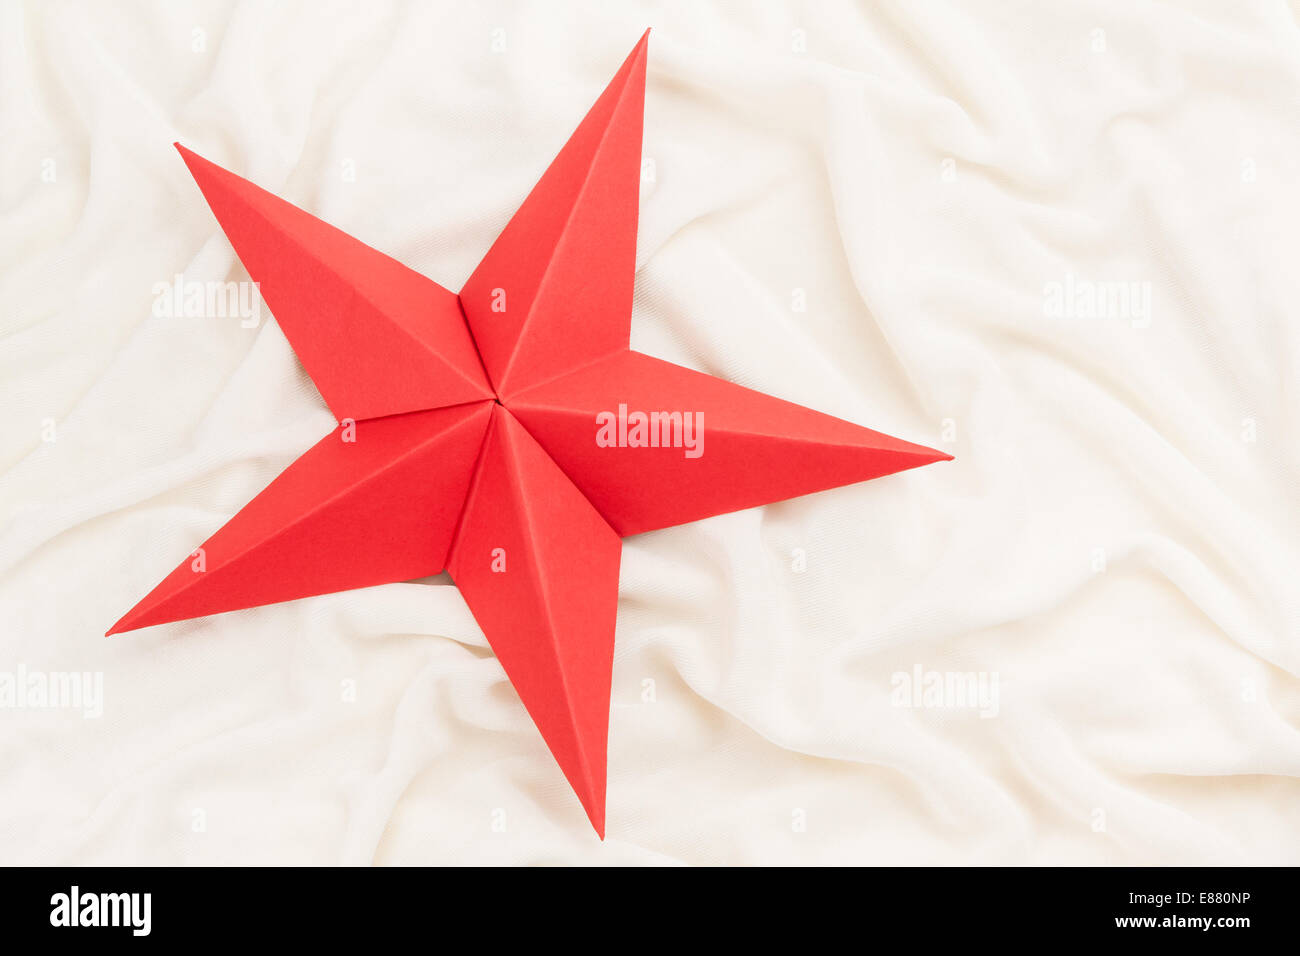 Origami Stella Di Natale 3d.Origami Christmas Star Immagini E Fotos Stock Alamy